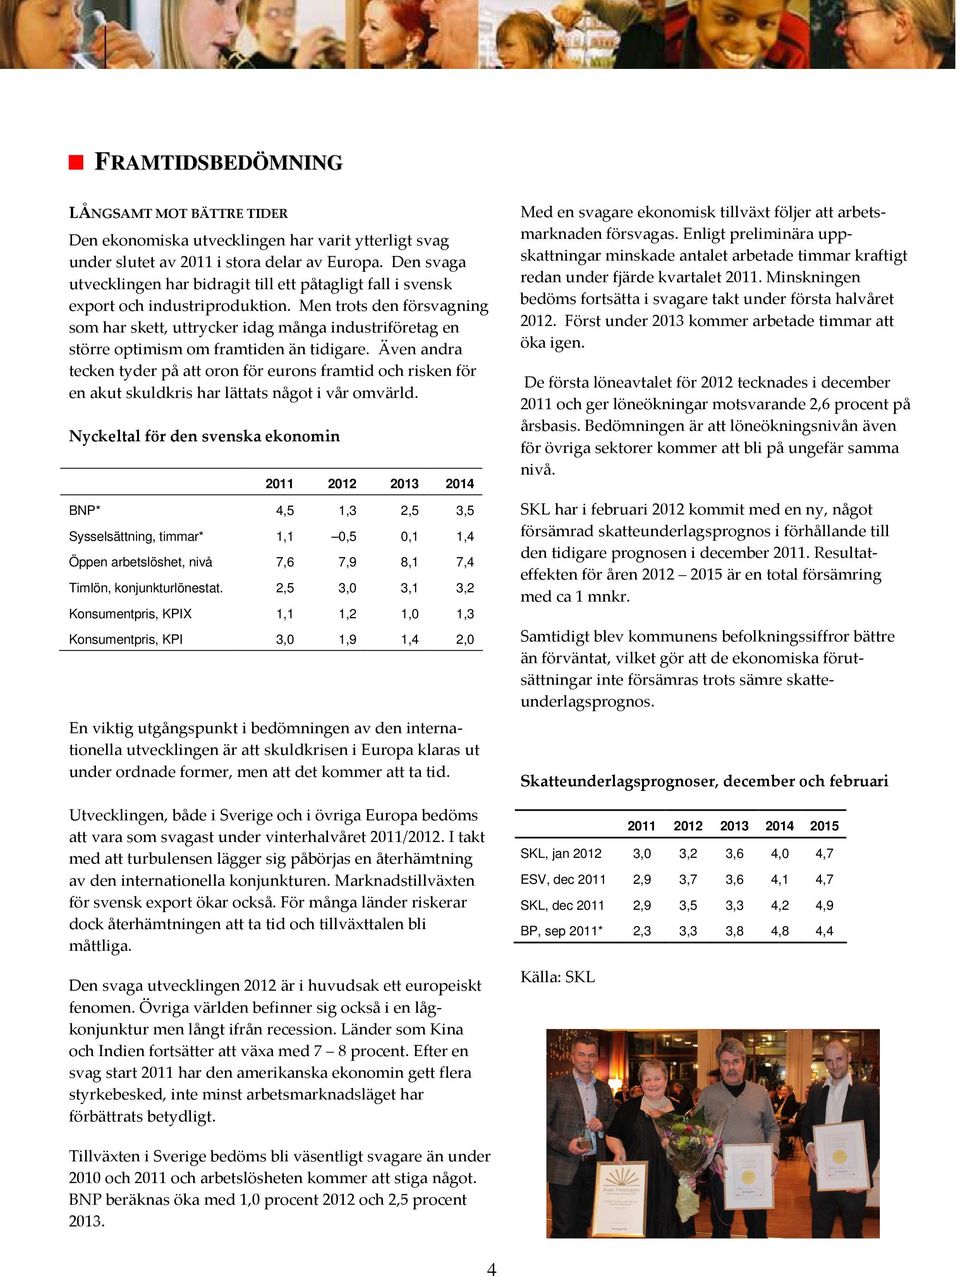 oron för eurons framtid och risken för en akut skuldkris har lättats något i vår omvärld Nyckeltal för den svenska ekonomin 2011 2012 2013 2014 BNP* 4,5 1,3 2,5 3,5 Sysselsättning, timmar* 1,1 0,5